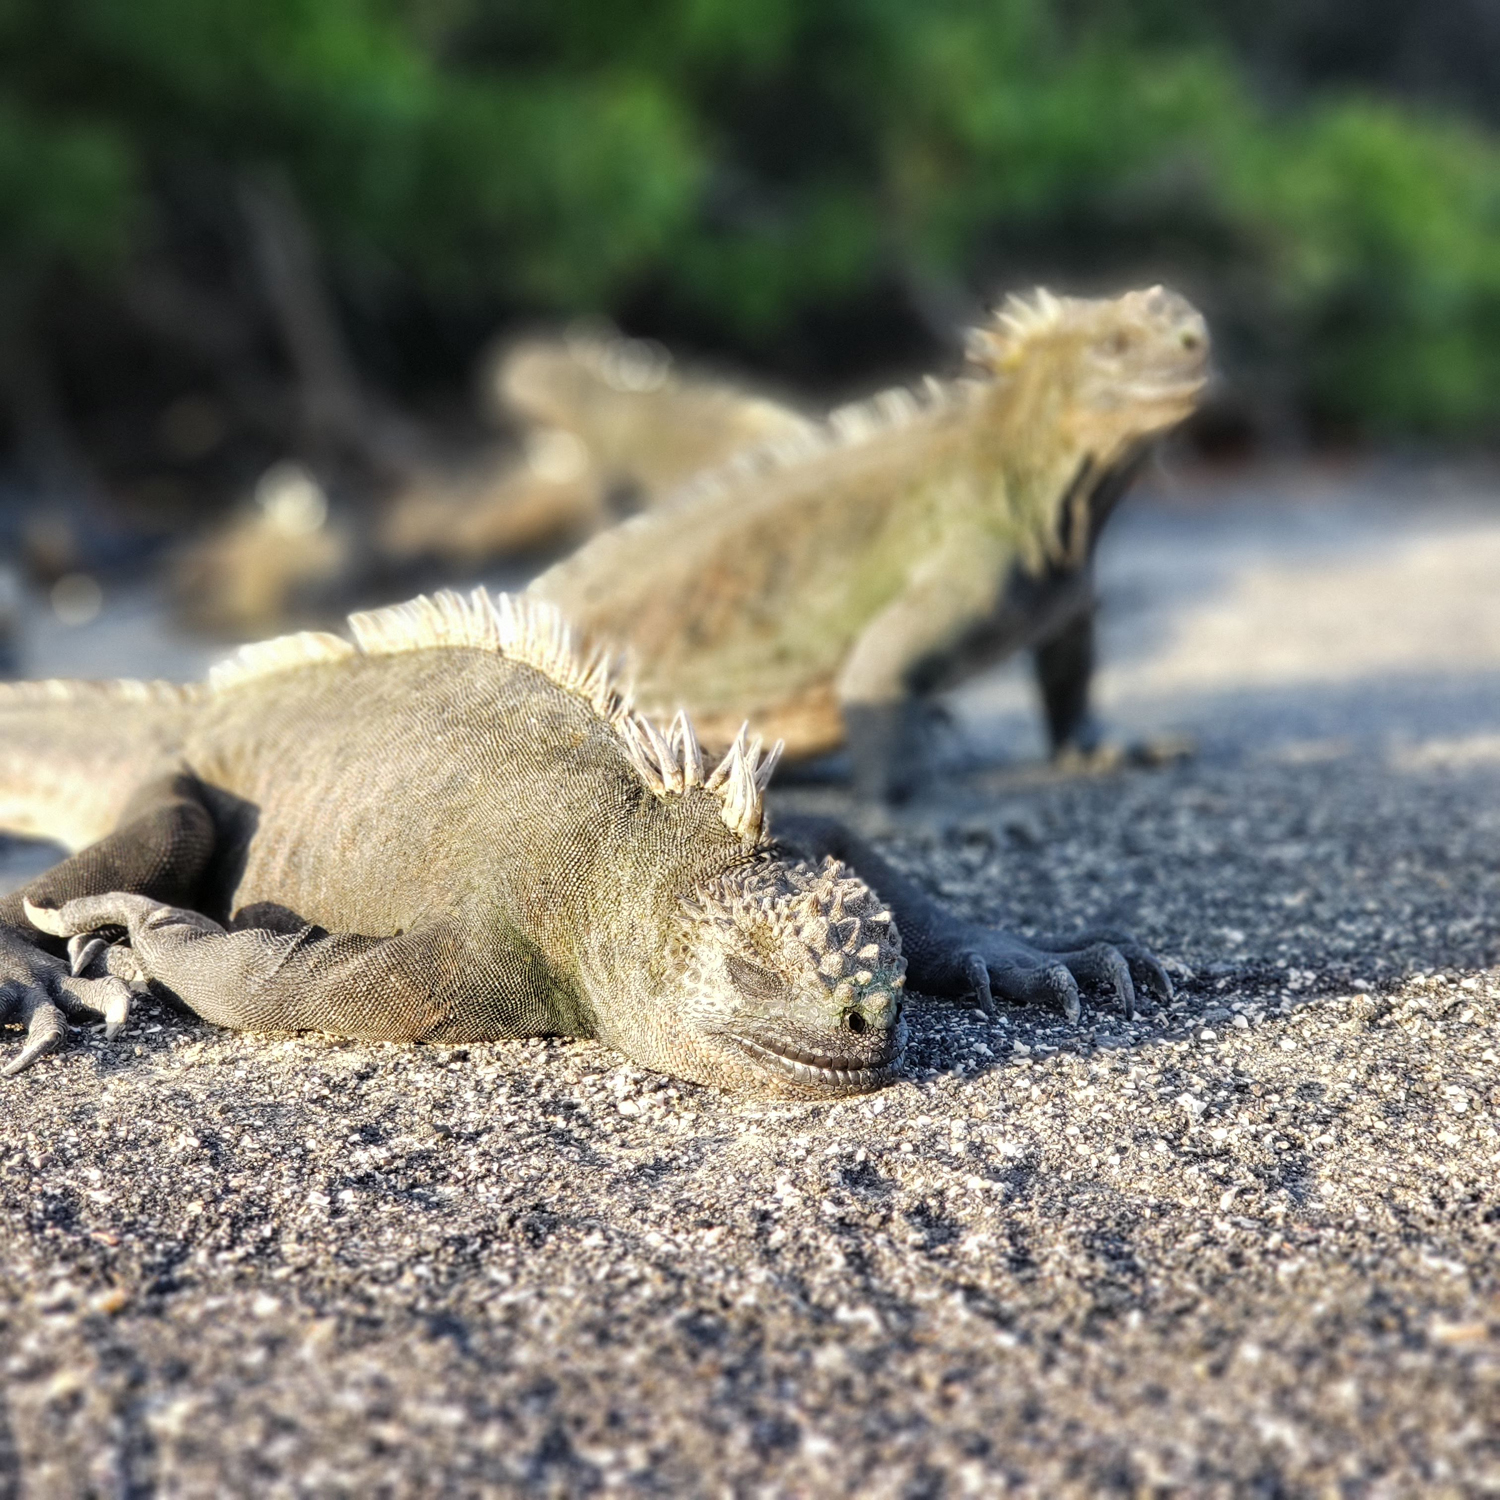 Some iguanas sun-bathing at Punta Espinosa on Fernandina (Galapagos).